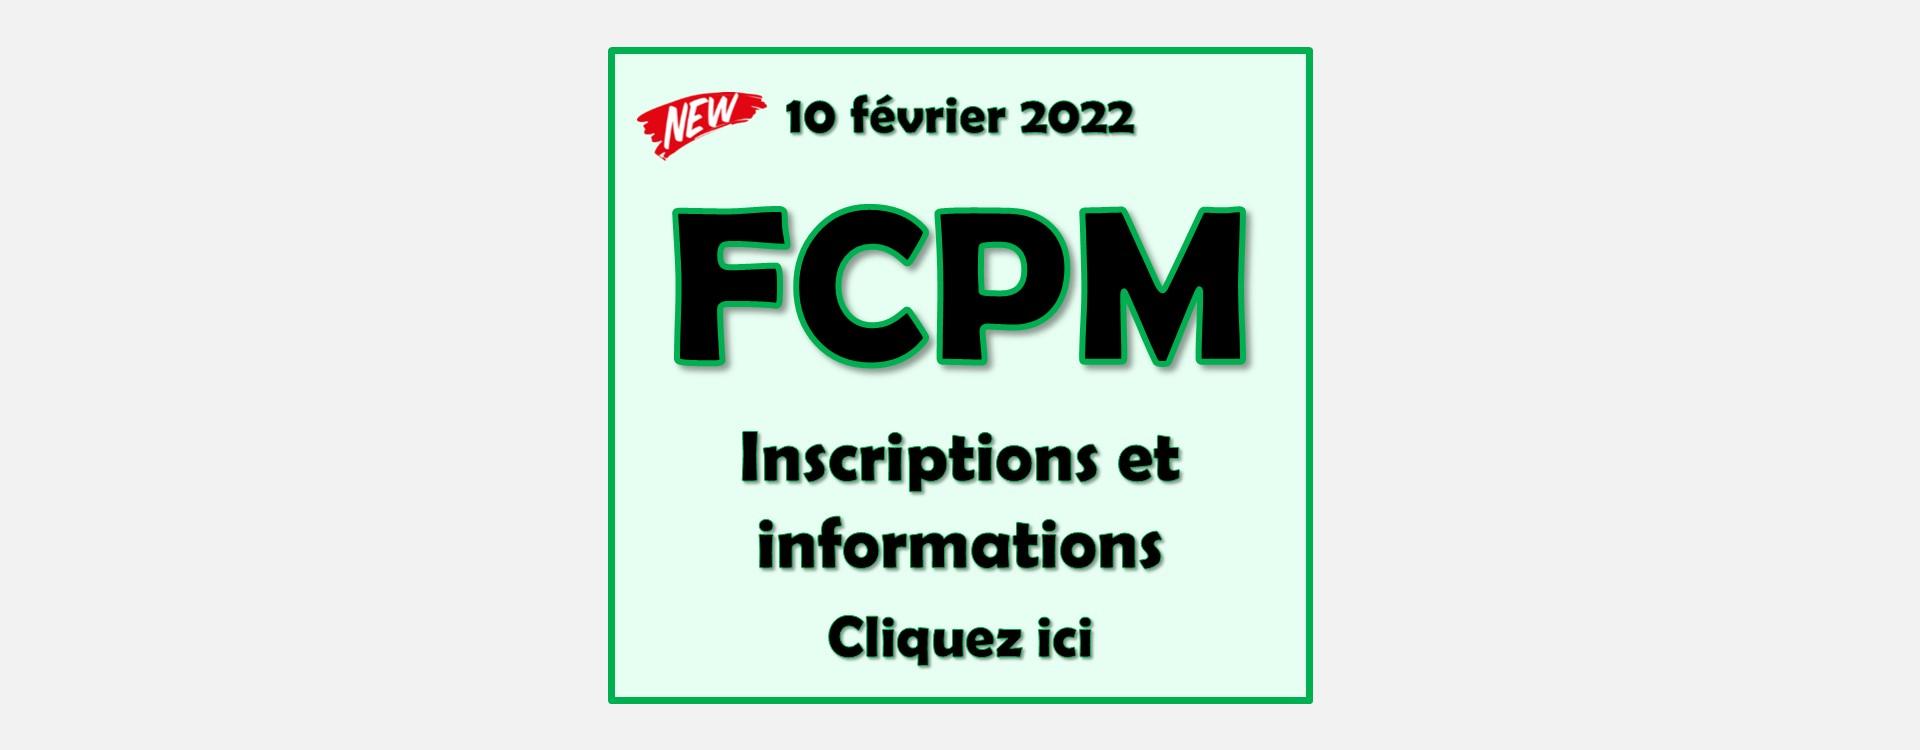 FCPM - Inscriptions et informations 